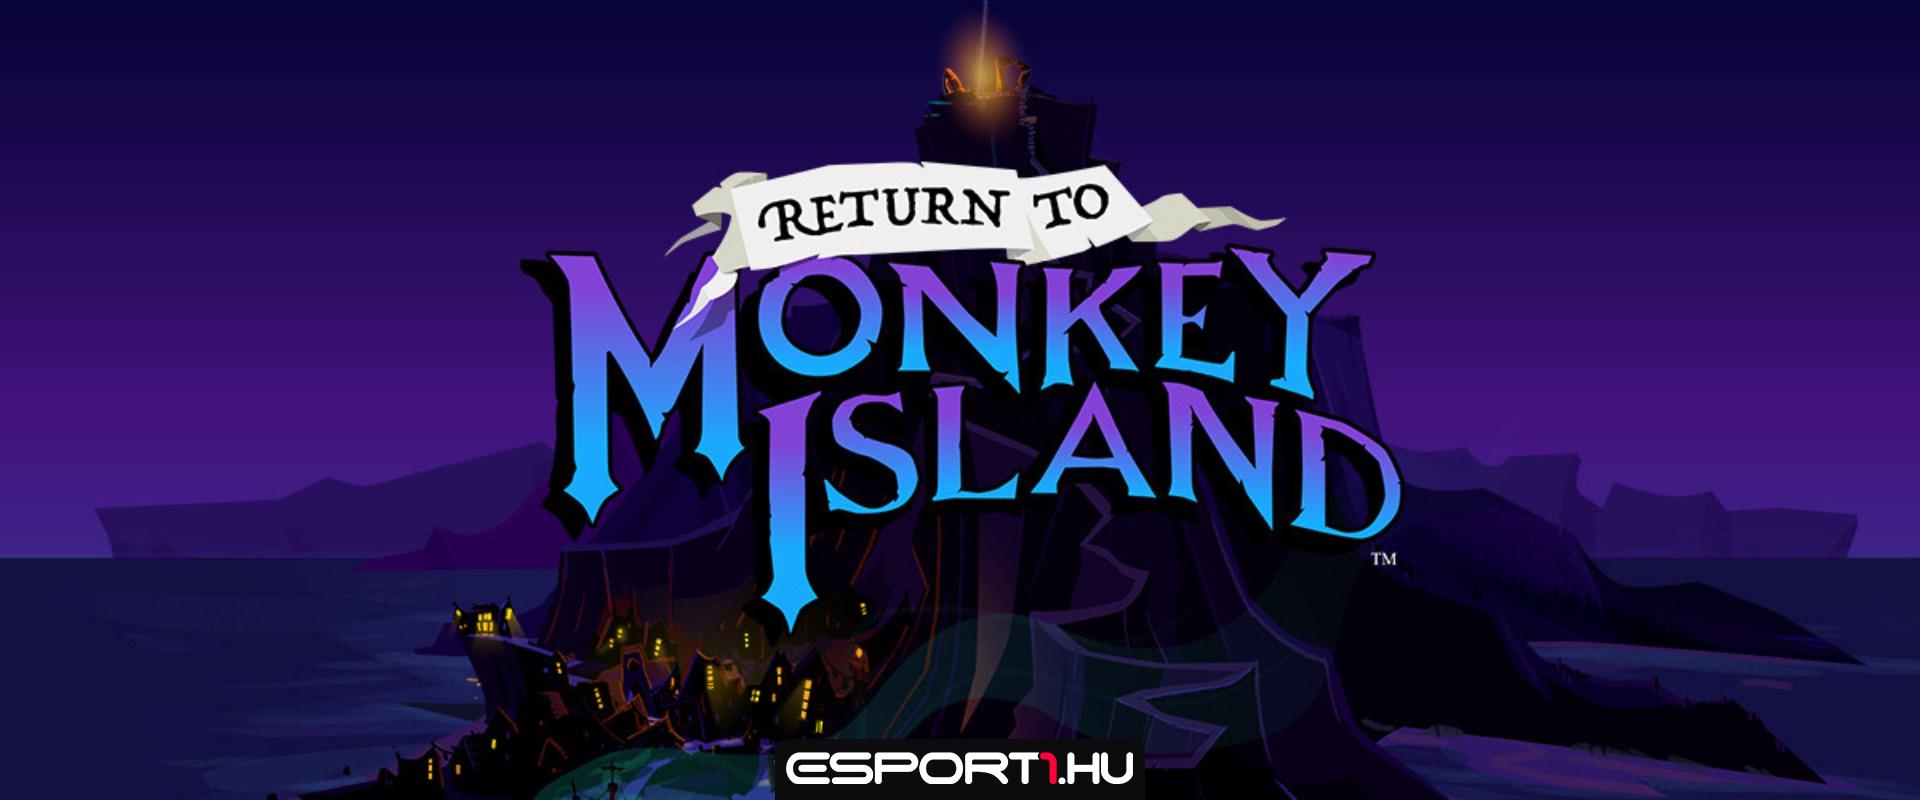 Megérkezett az első gameplay trailer a Monkey Island legújabb részéhez